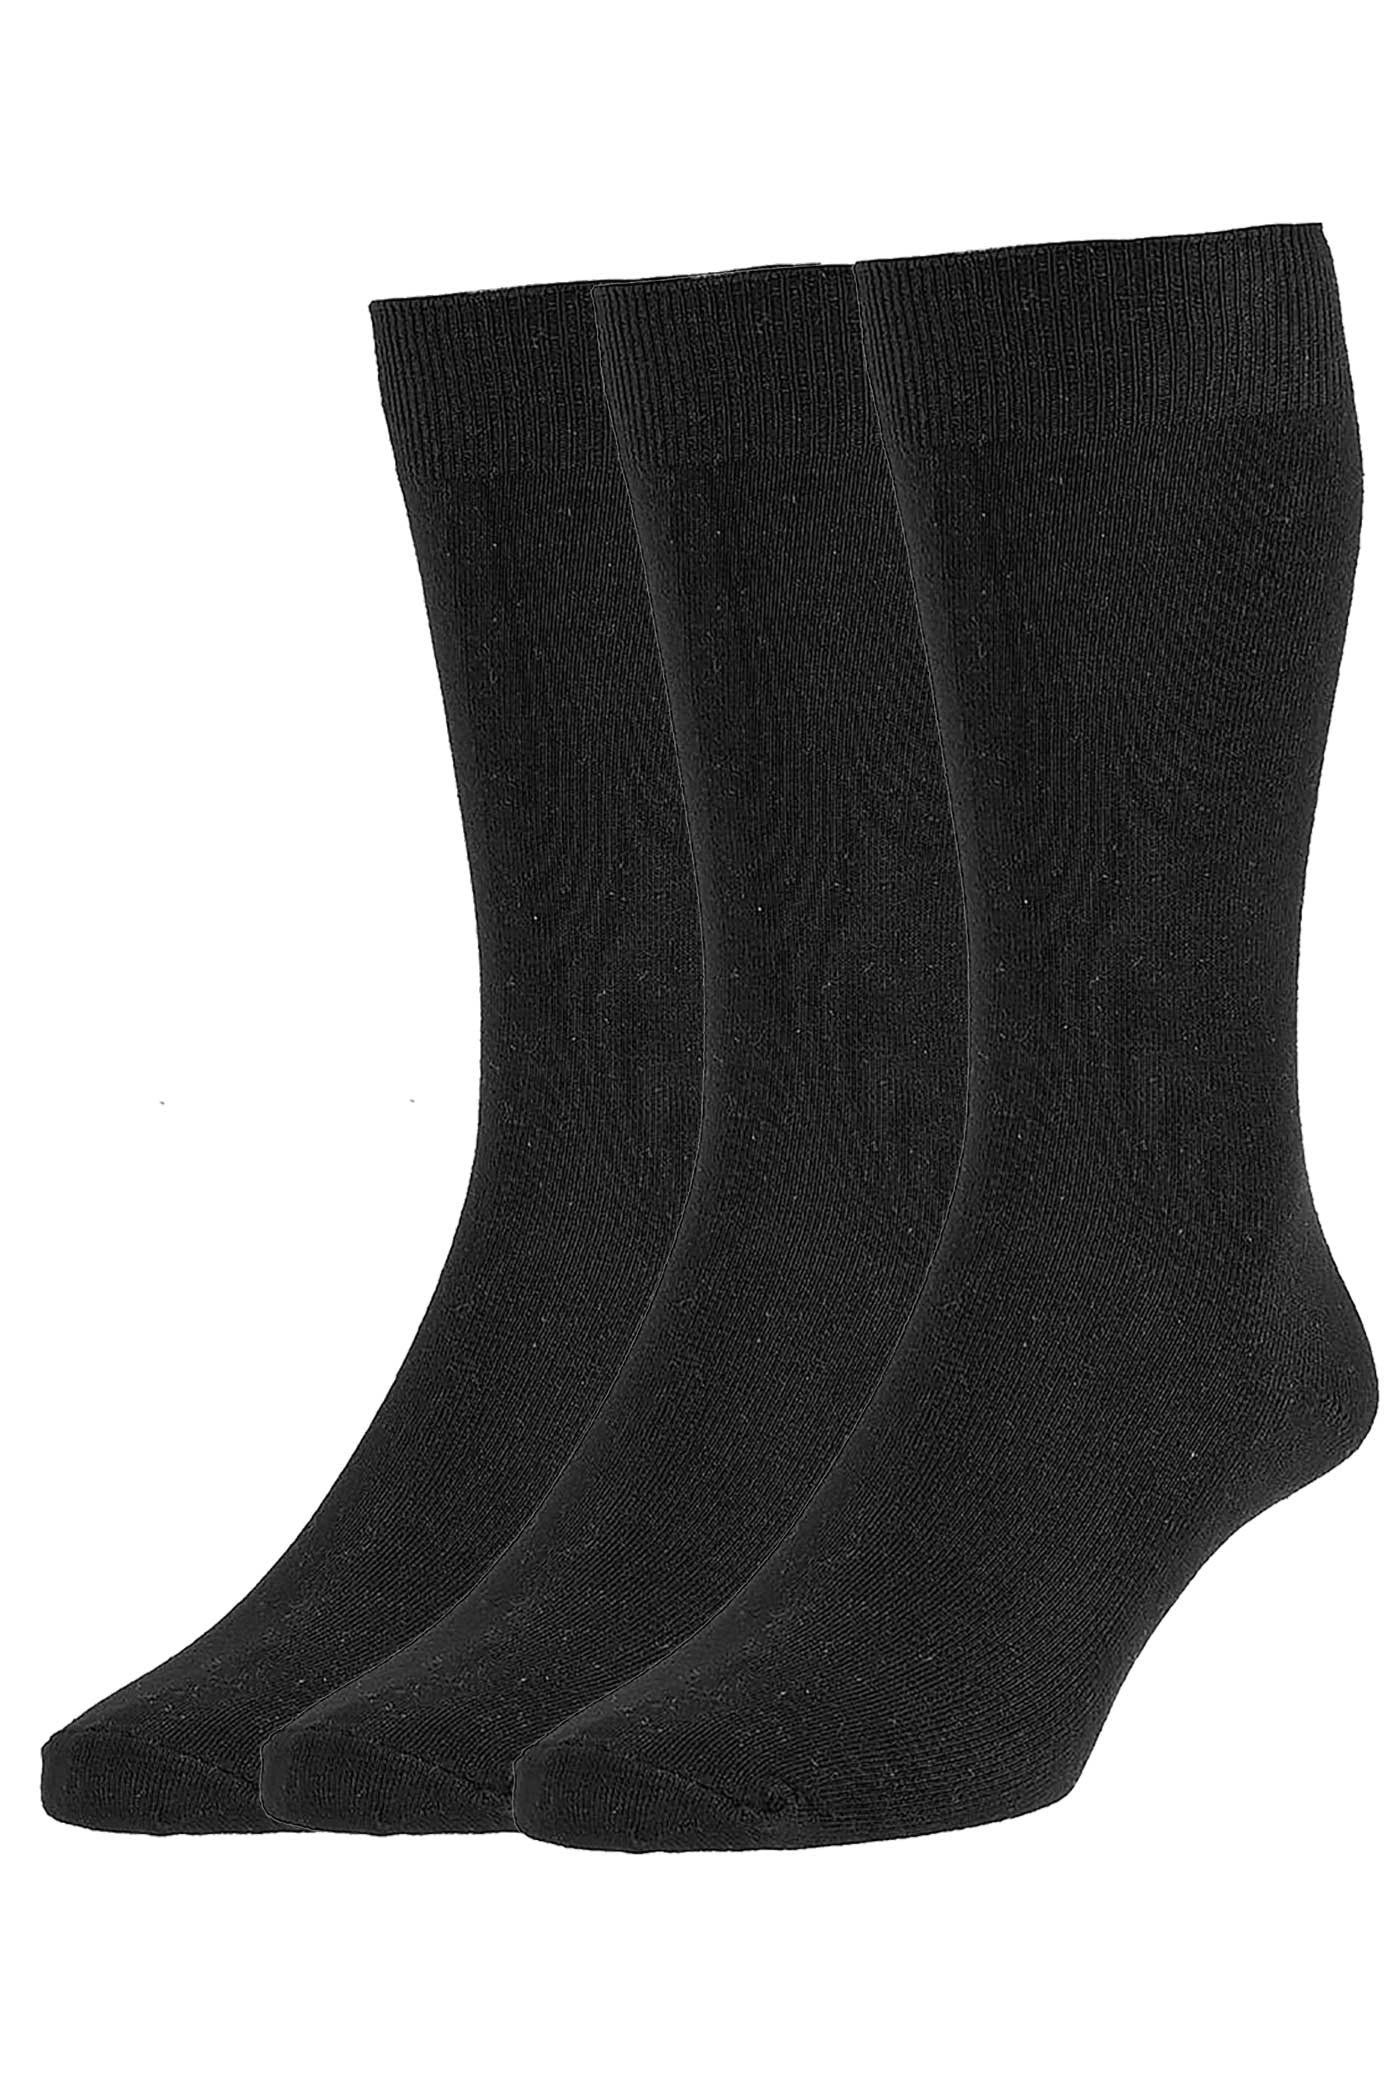 HJS 7116/3 Classic Sock Black (3 pack)